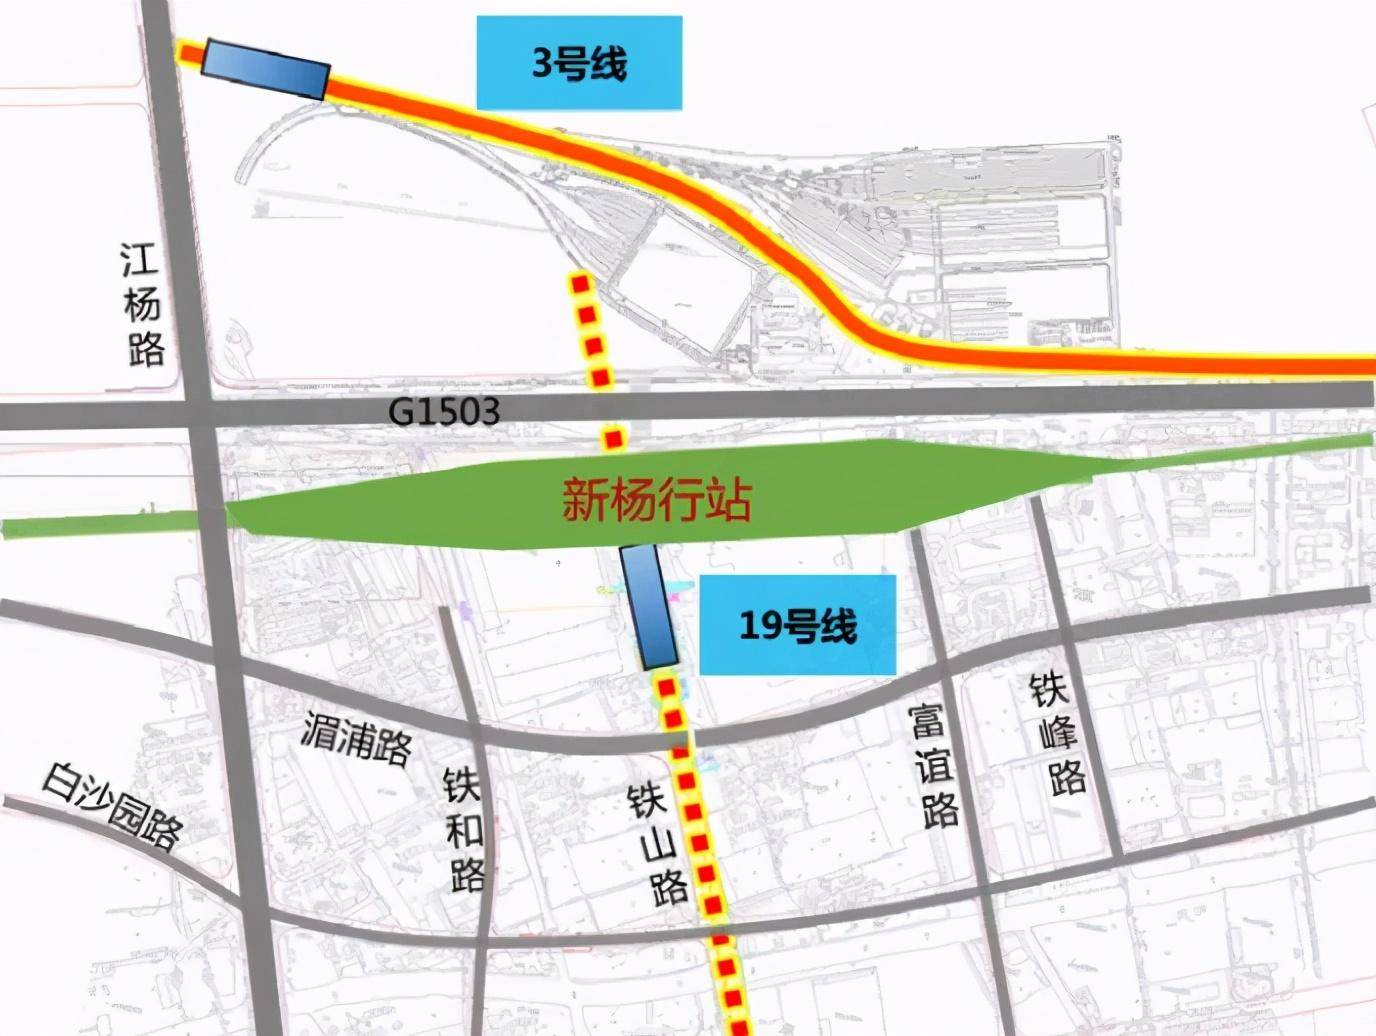 地铁19号线北延伸至新杨行站概念性方案 杨行枢纽与 吴淞枢纽组成的